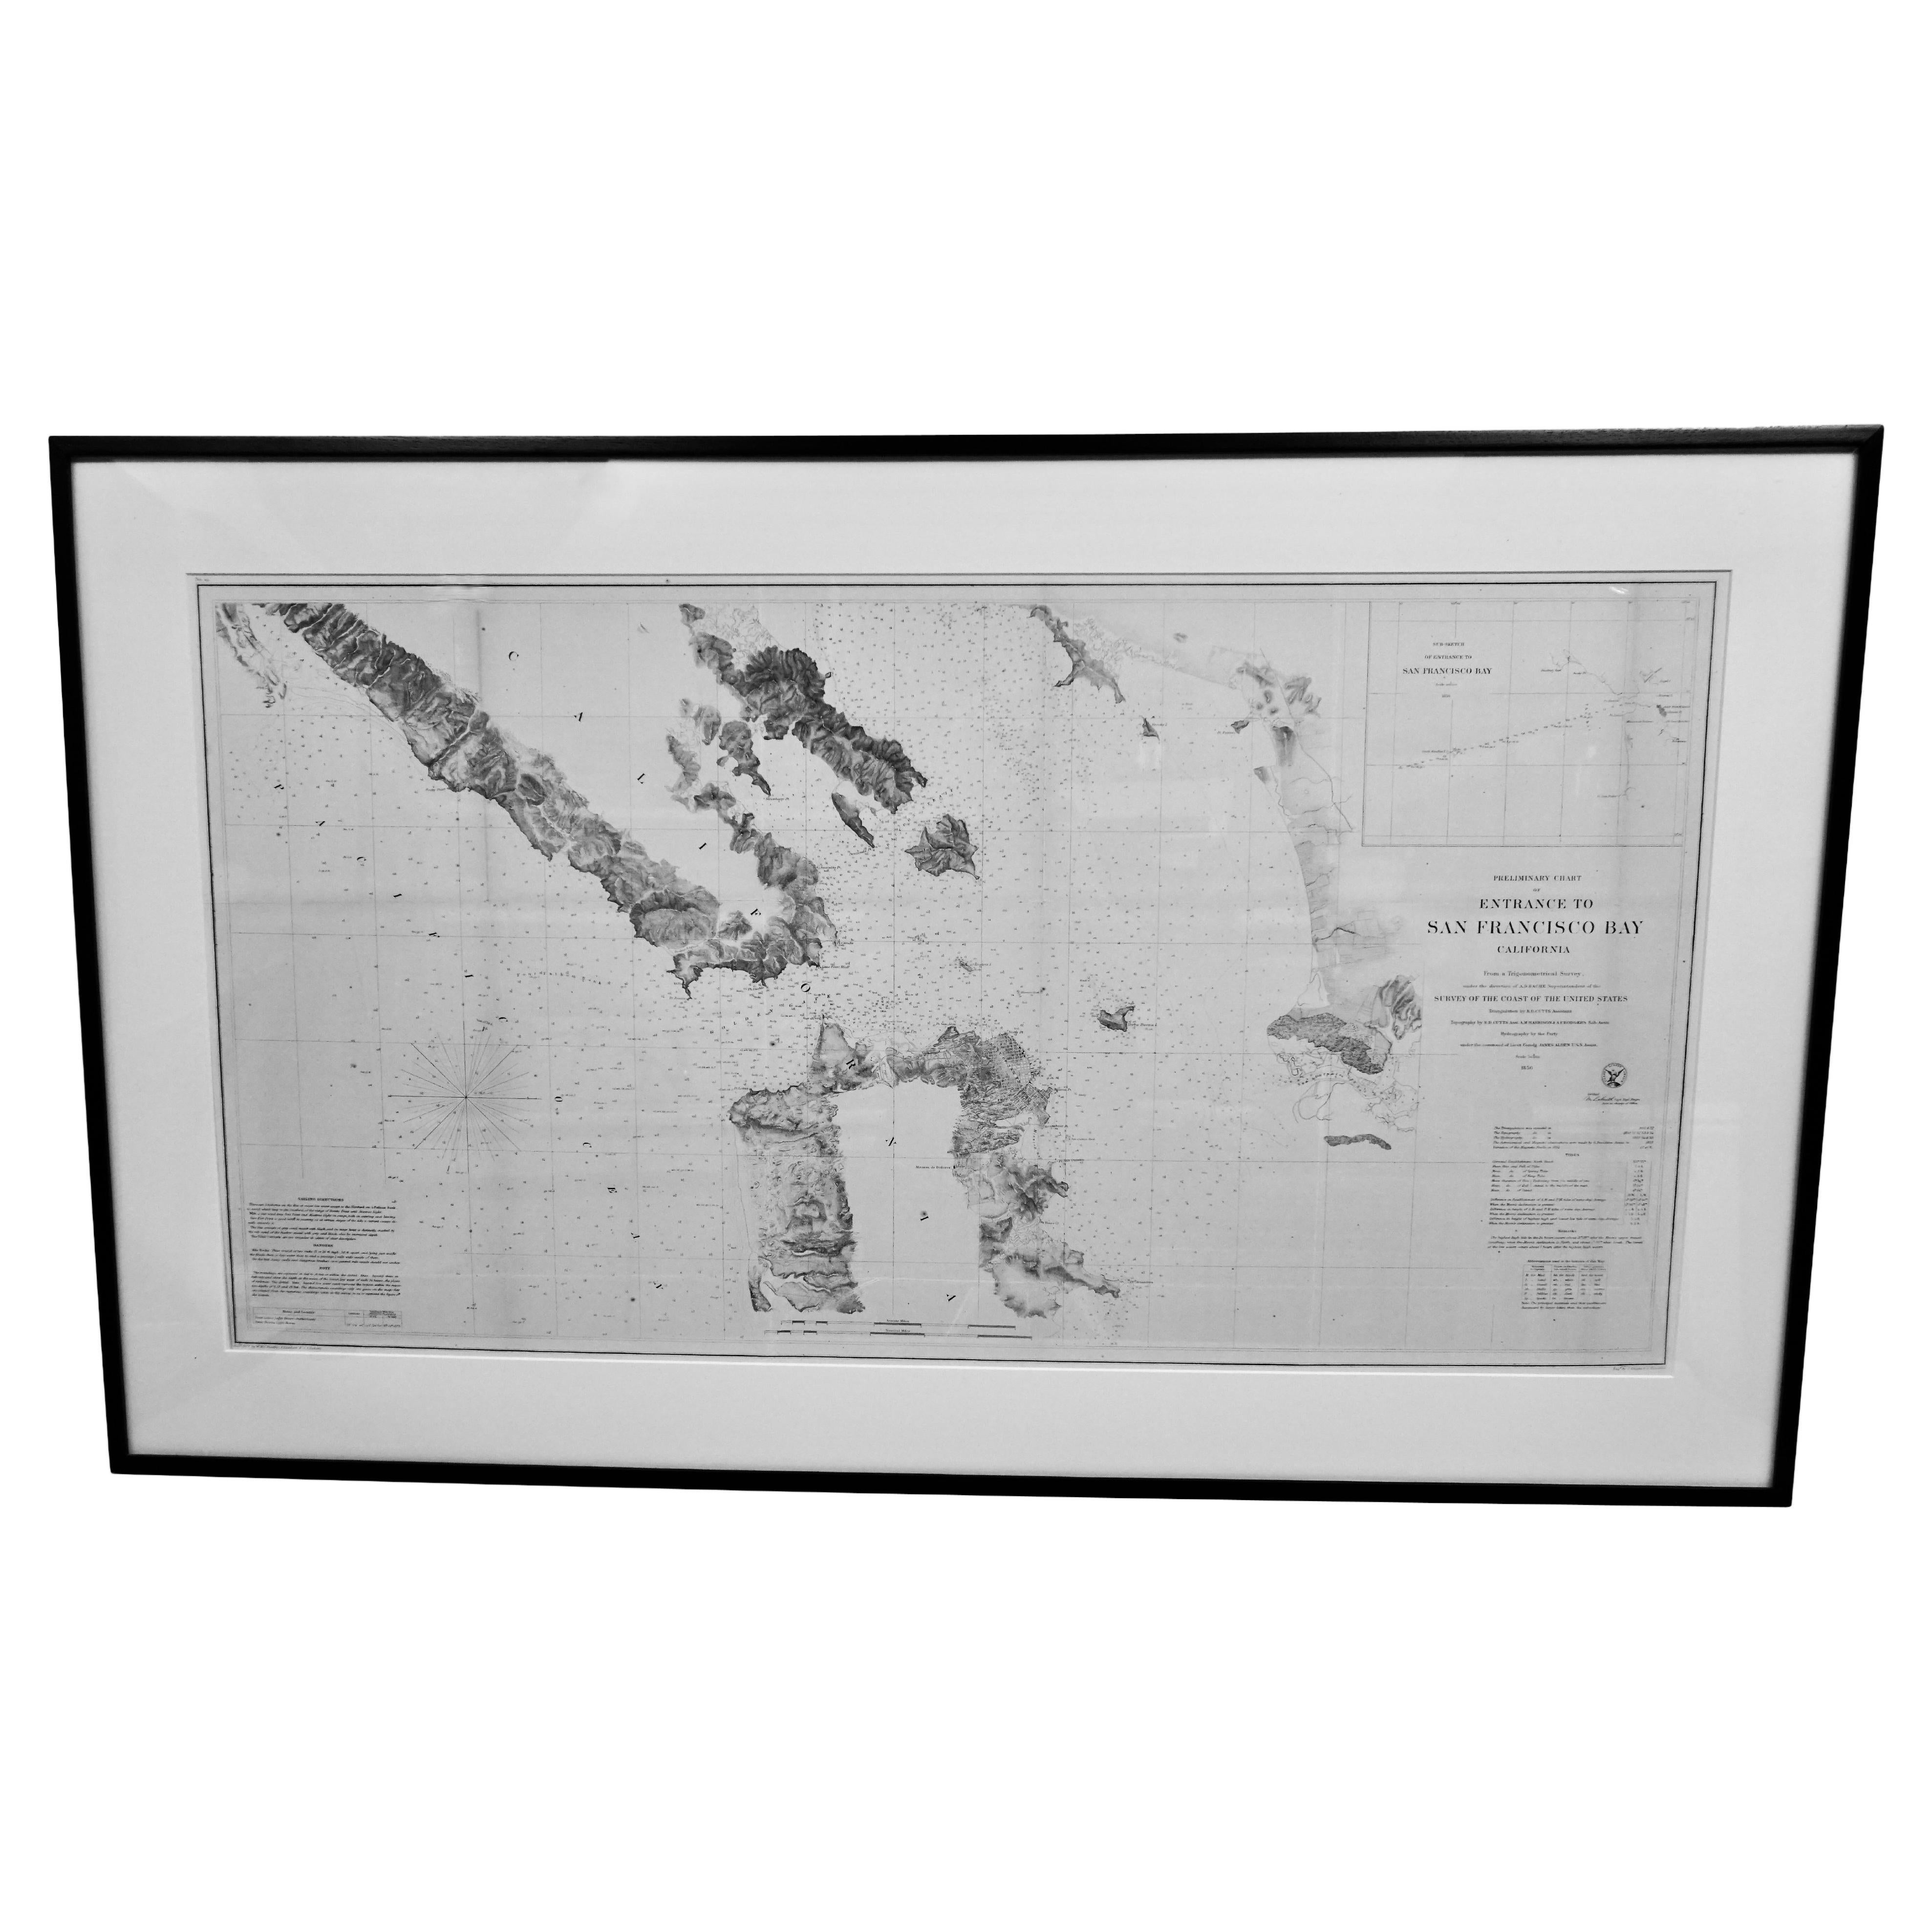 Seltene U.S. Coast Survey Karte, die den Eingang zur San Francisco Bay zeigt, datiert 1856